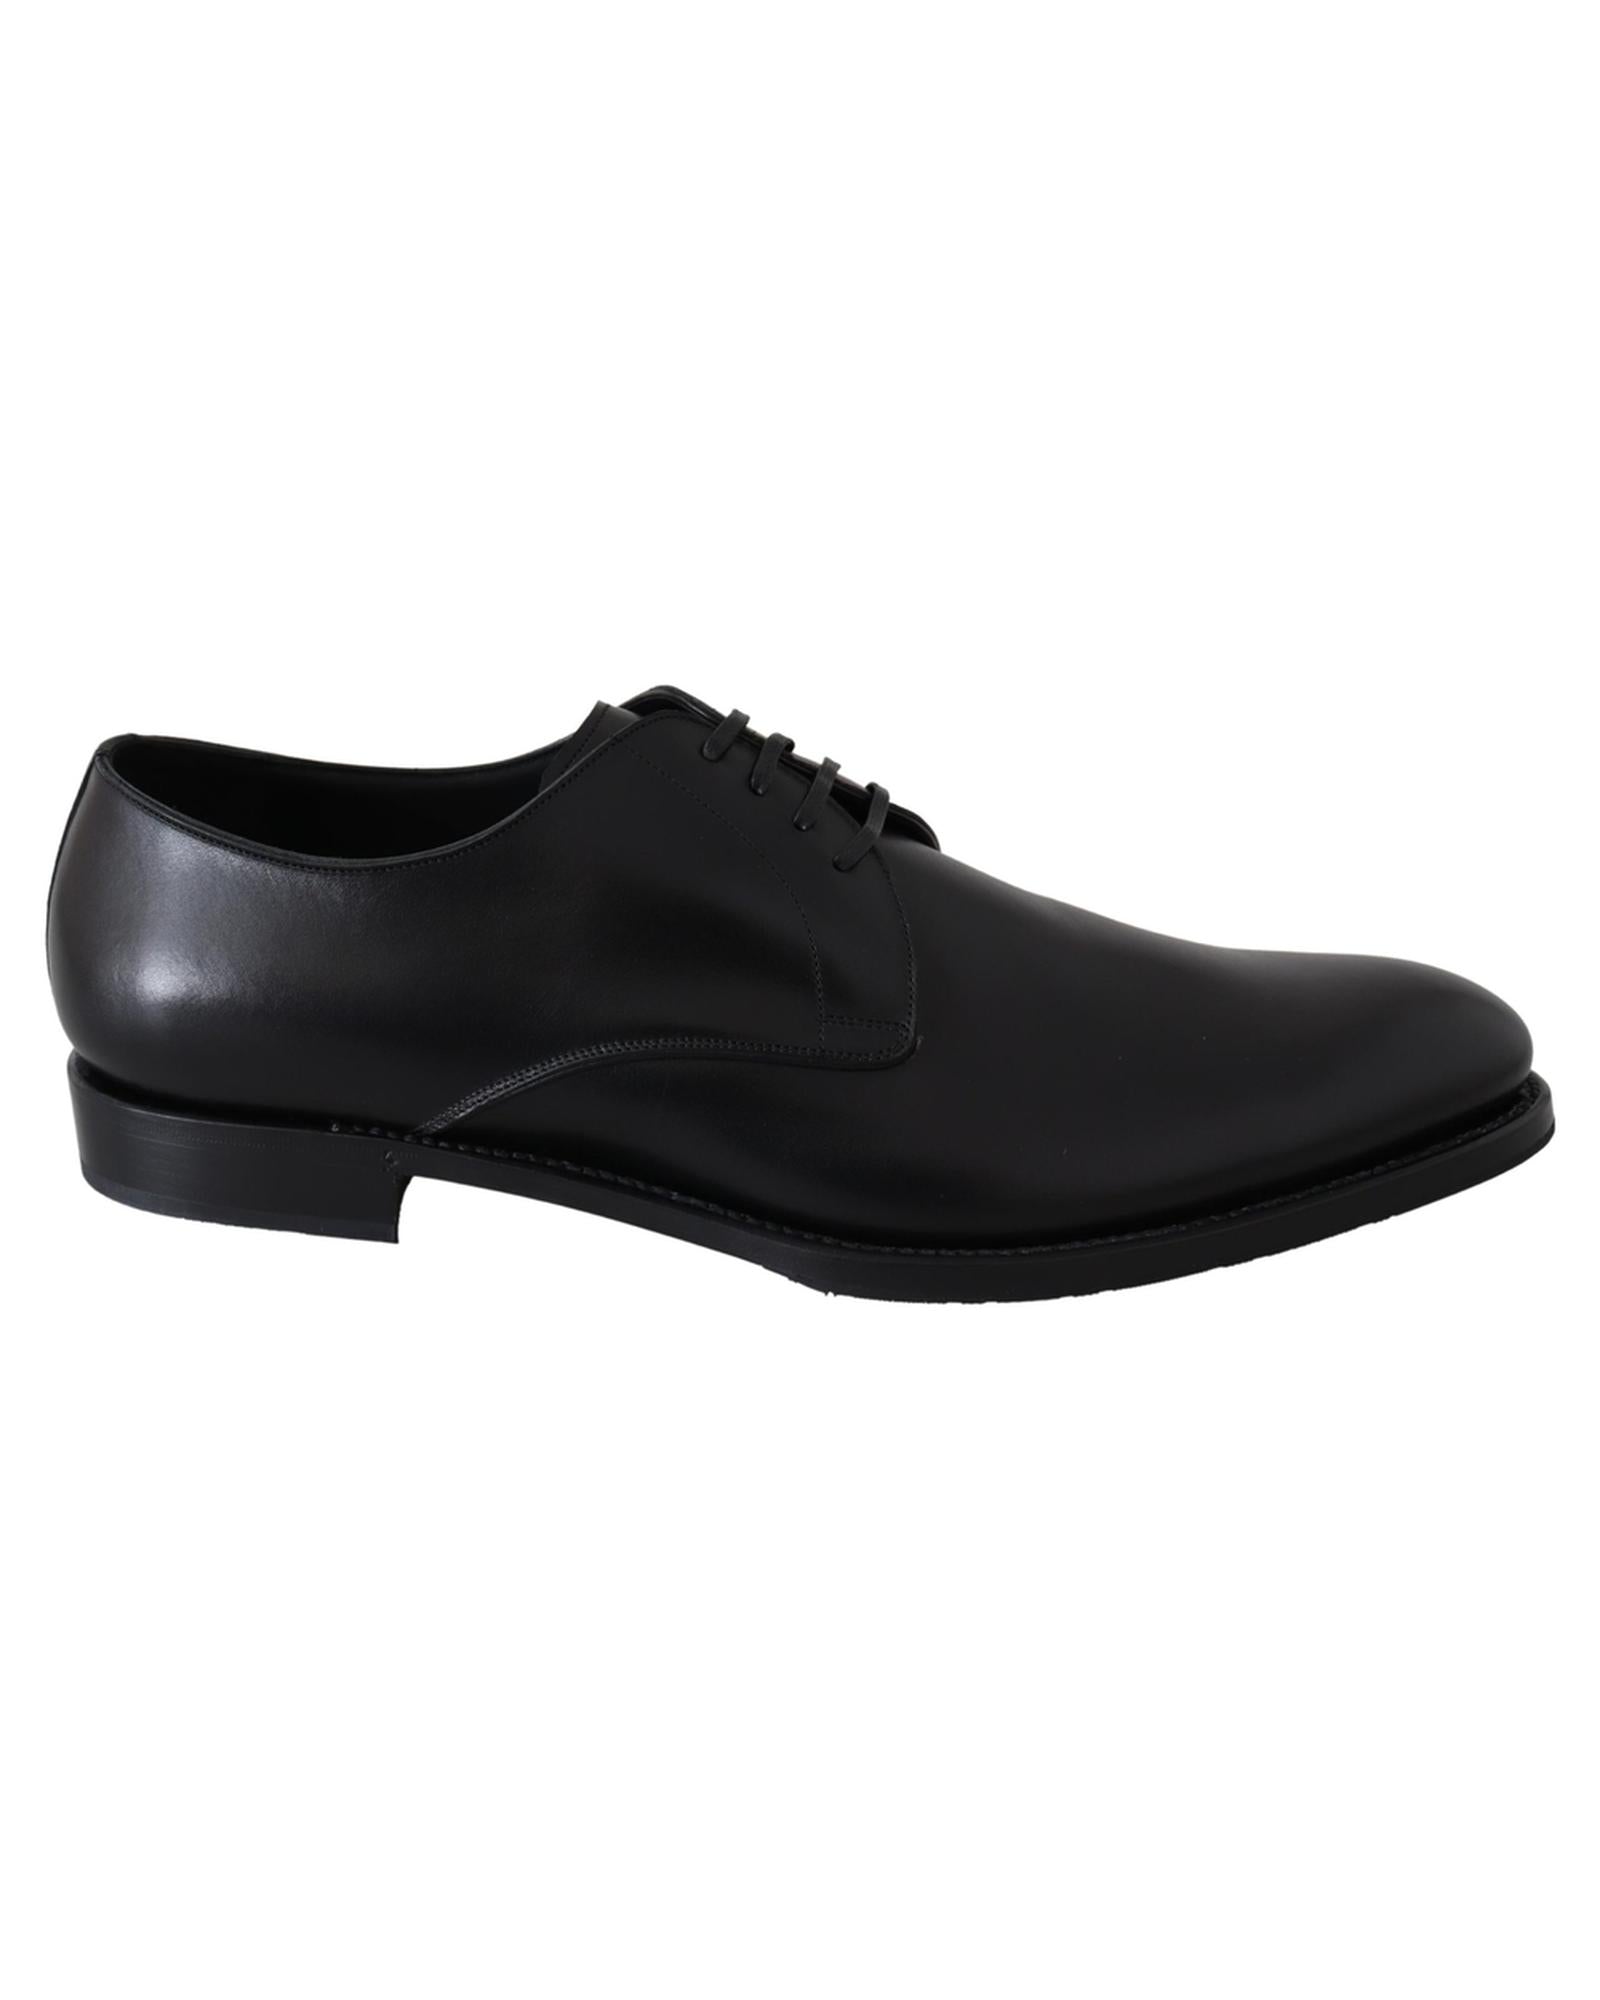 Handcrafted Black Leather Derby Dress Formal Shoes 41.5 EU Men